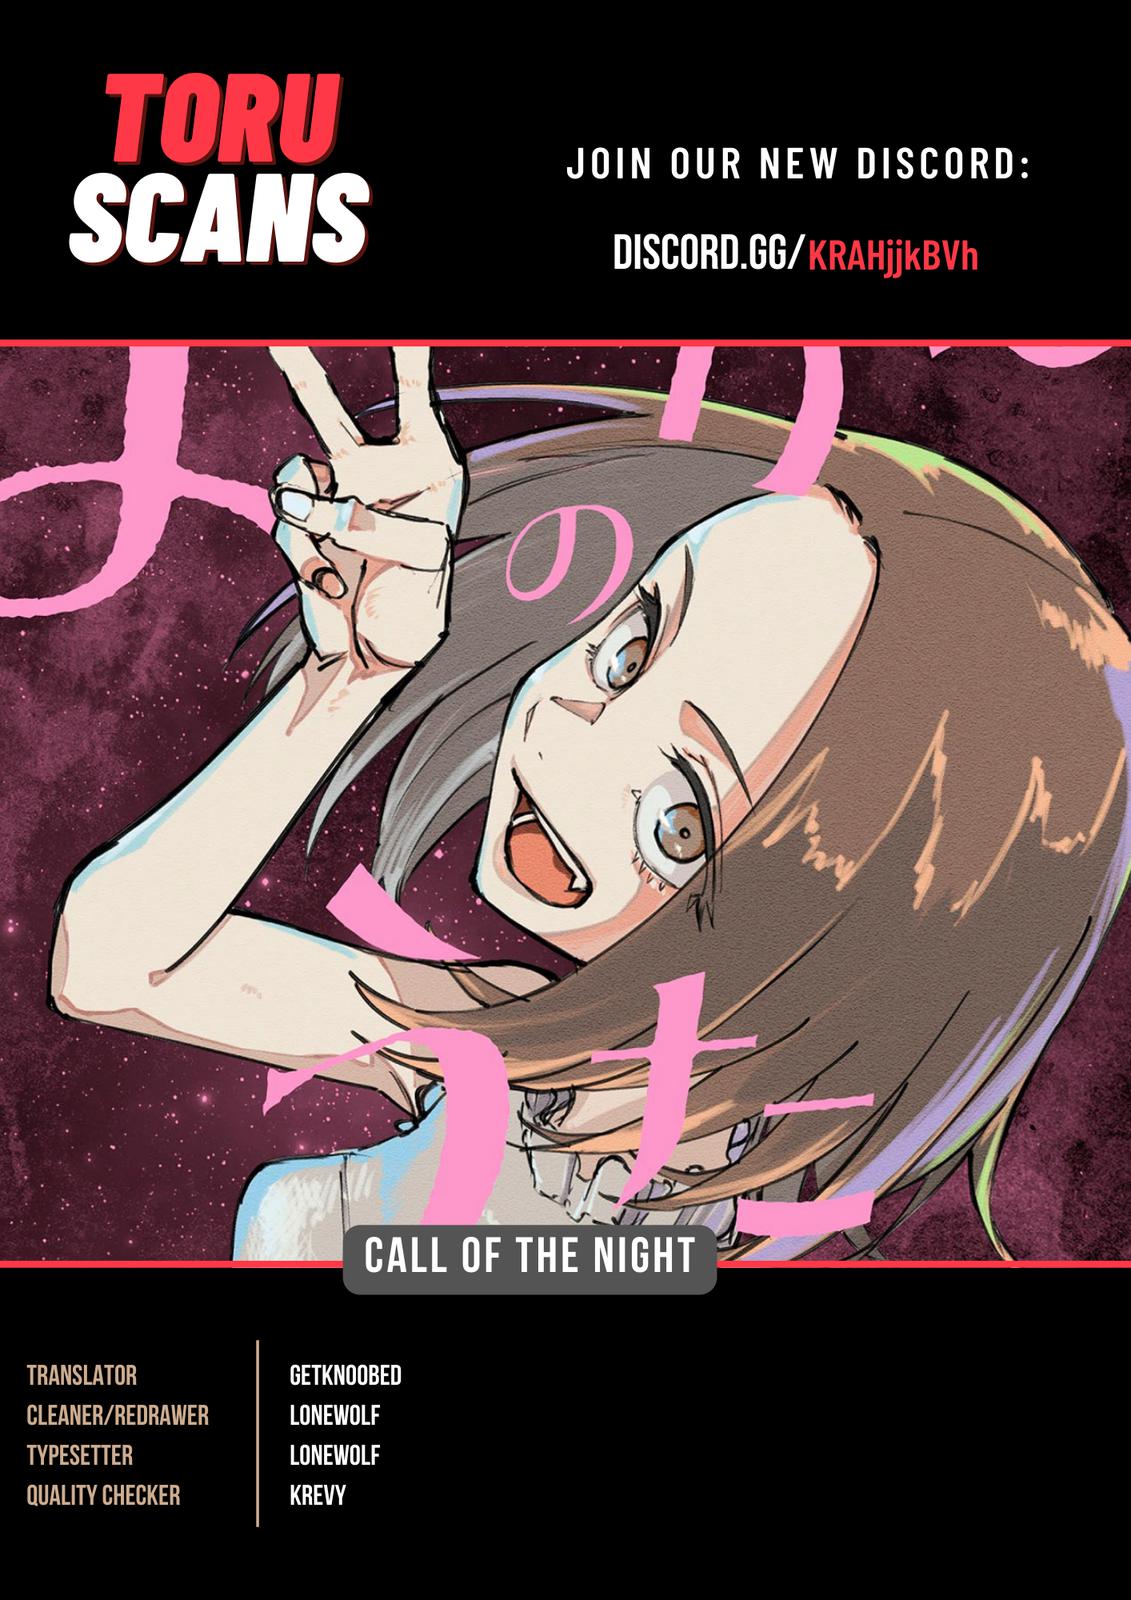 Call Of The Night Manga Online